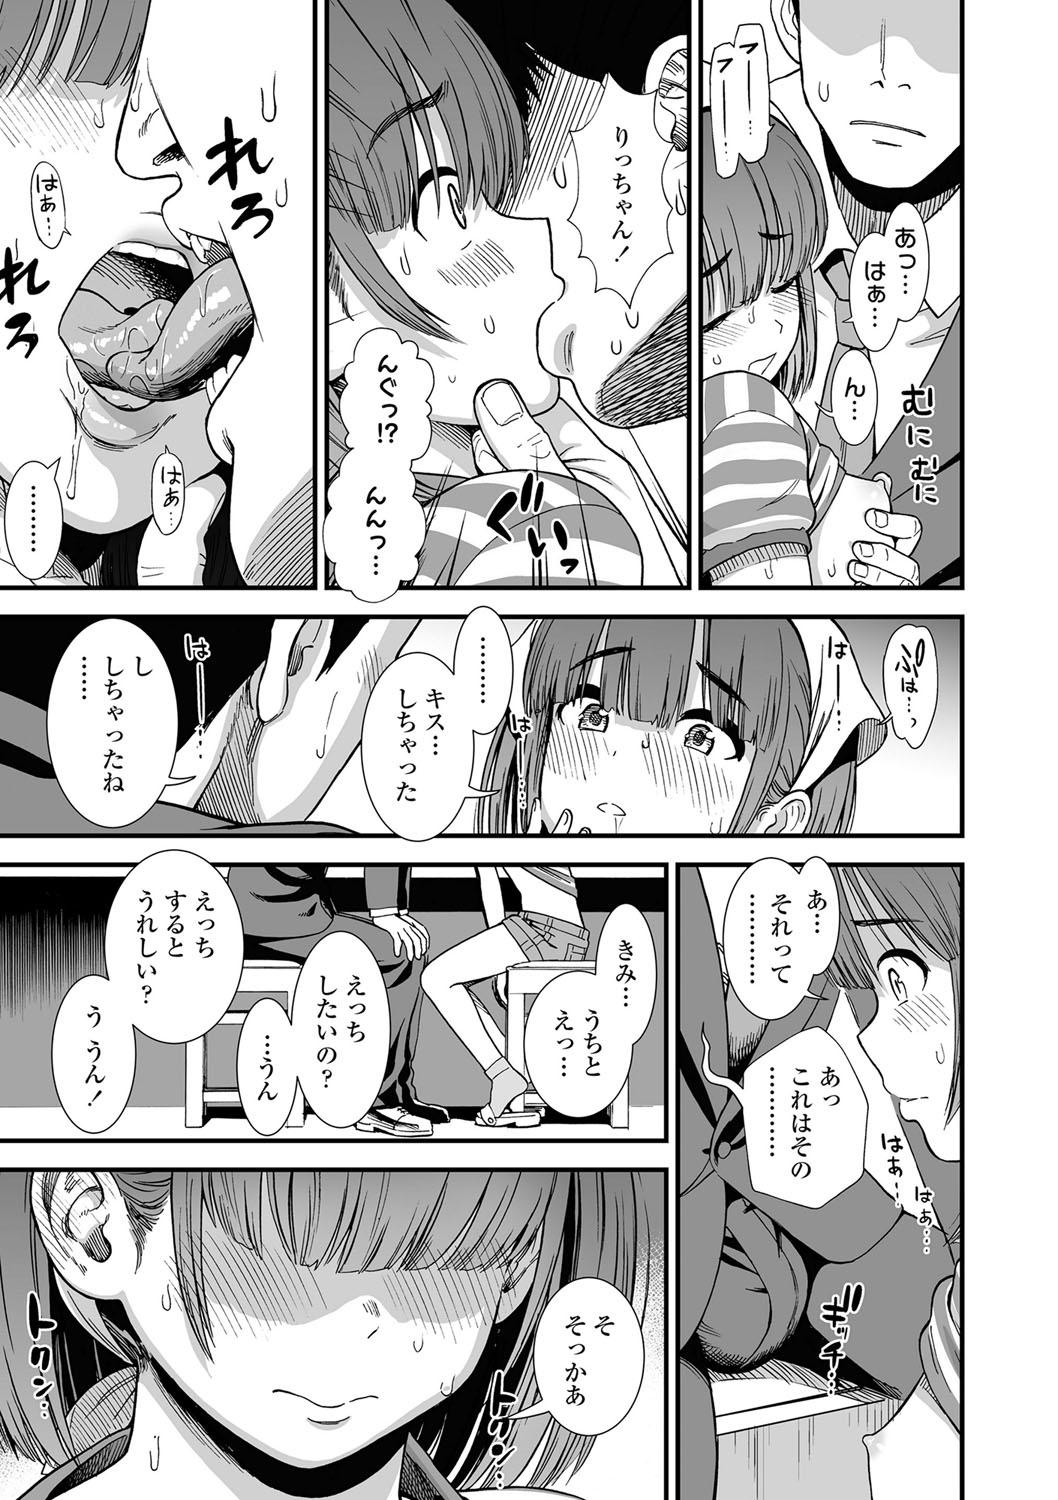 Tight Pussy Ore wa Kuzu dakara koso Sukuwareru Kenri ga Aru! Cam Girl - Page 12